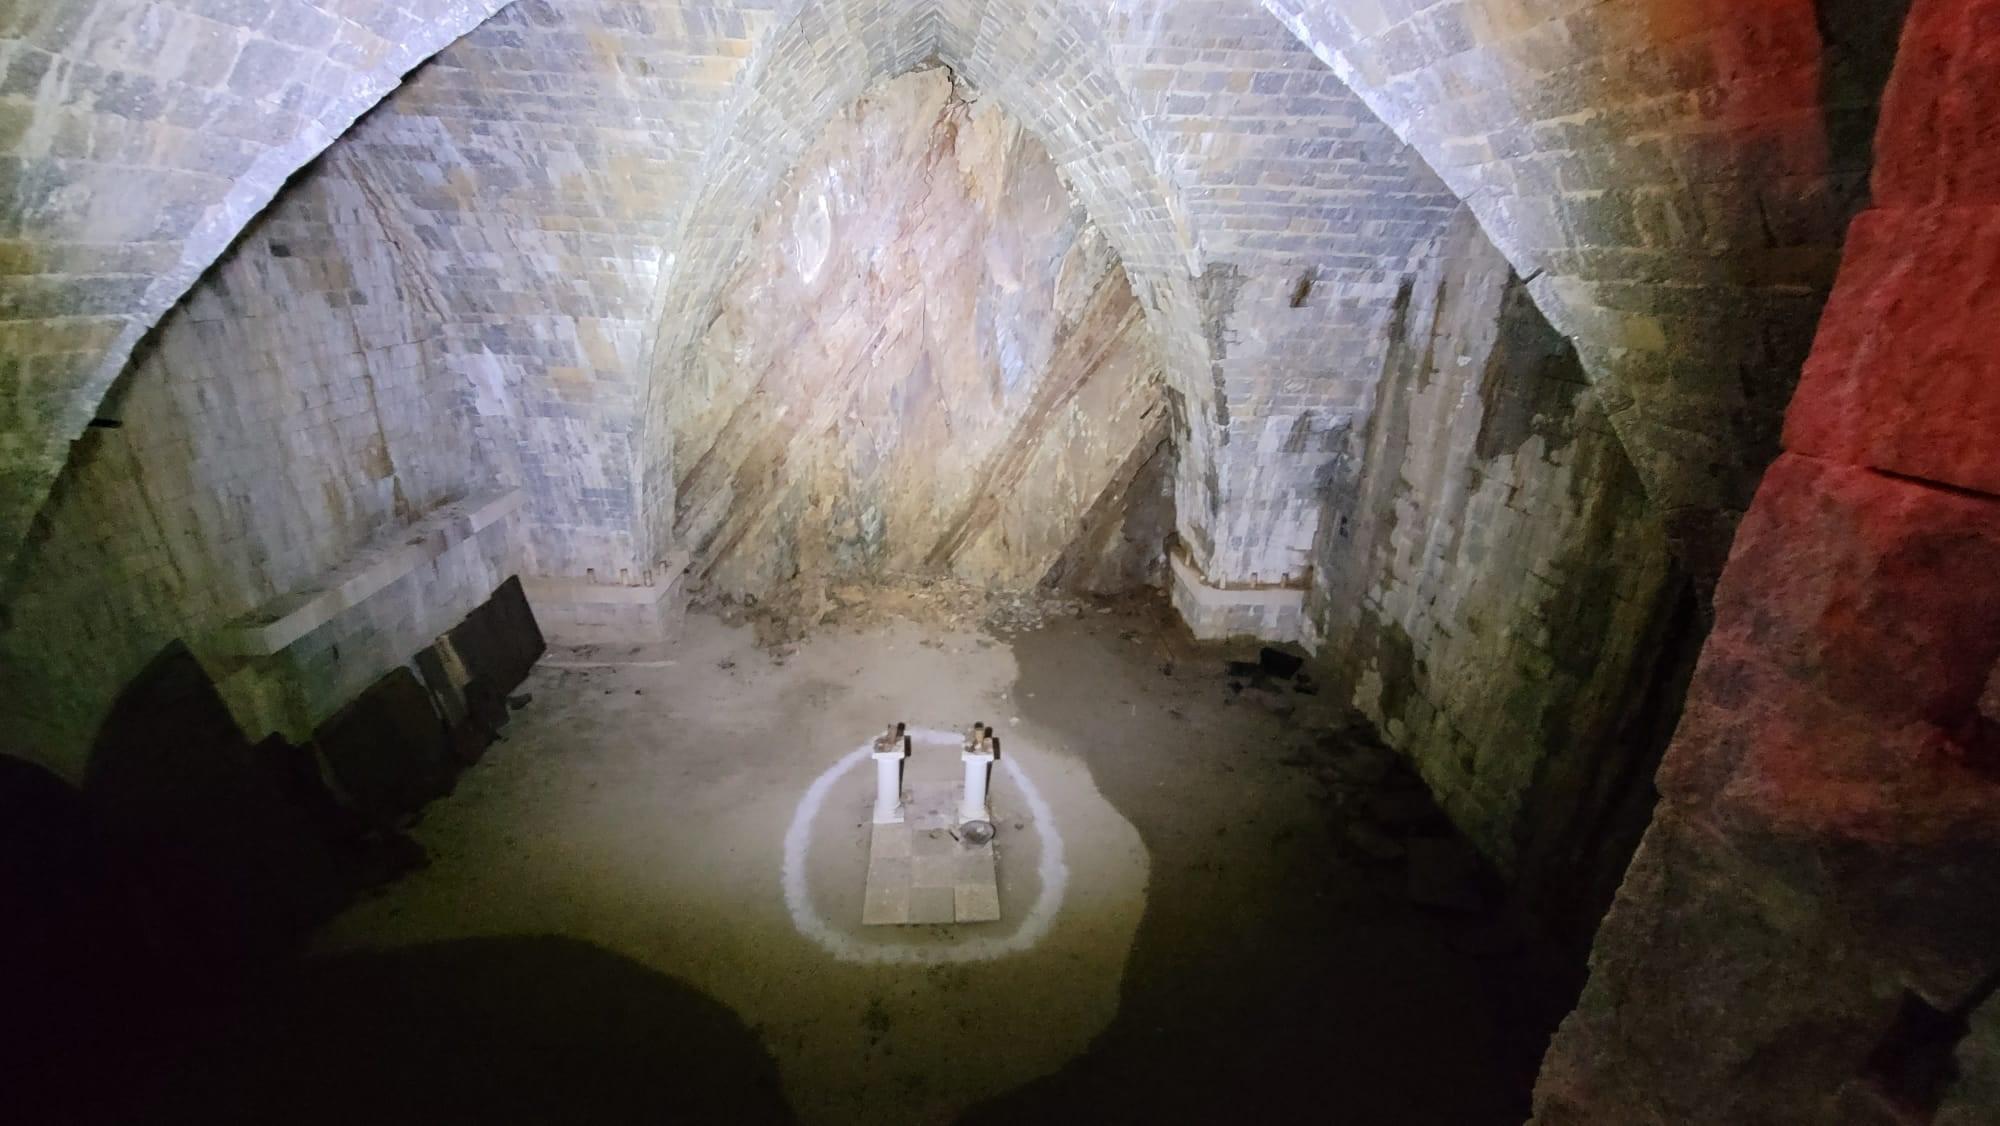 Lors d'une de leur exploration urbaine dans un château abandonné situé sur la commune de Trébons (Hautes-Pyrénées), trois jeunes ont découvert un crâne et des ossements probablement d’origine humaine. Jo Urbex